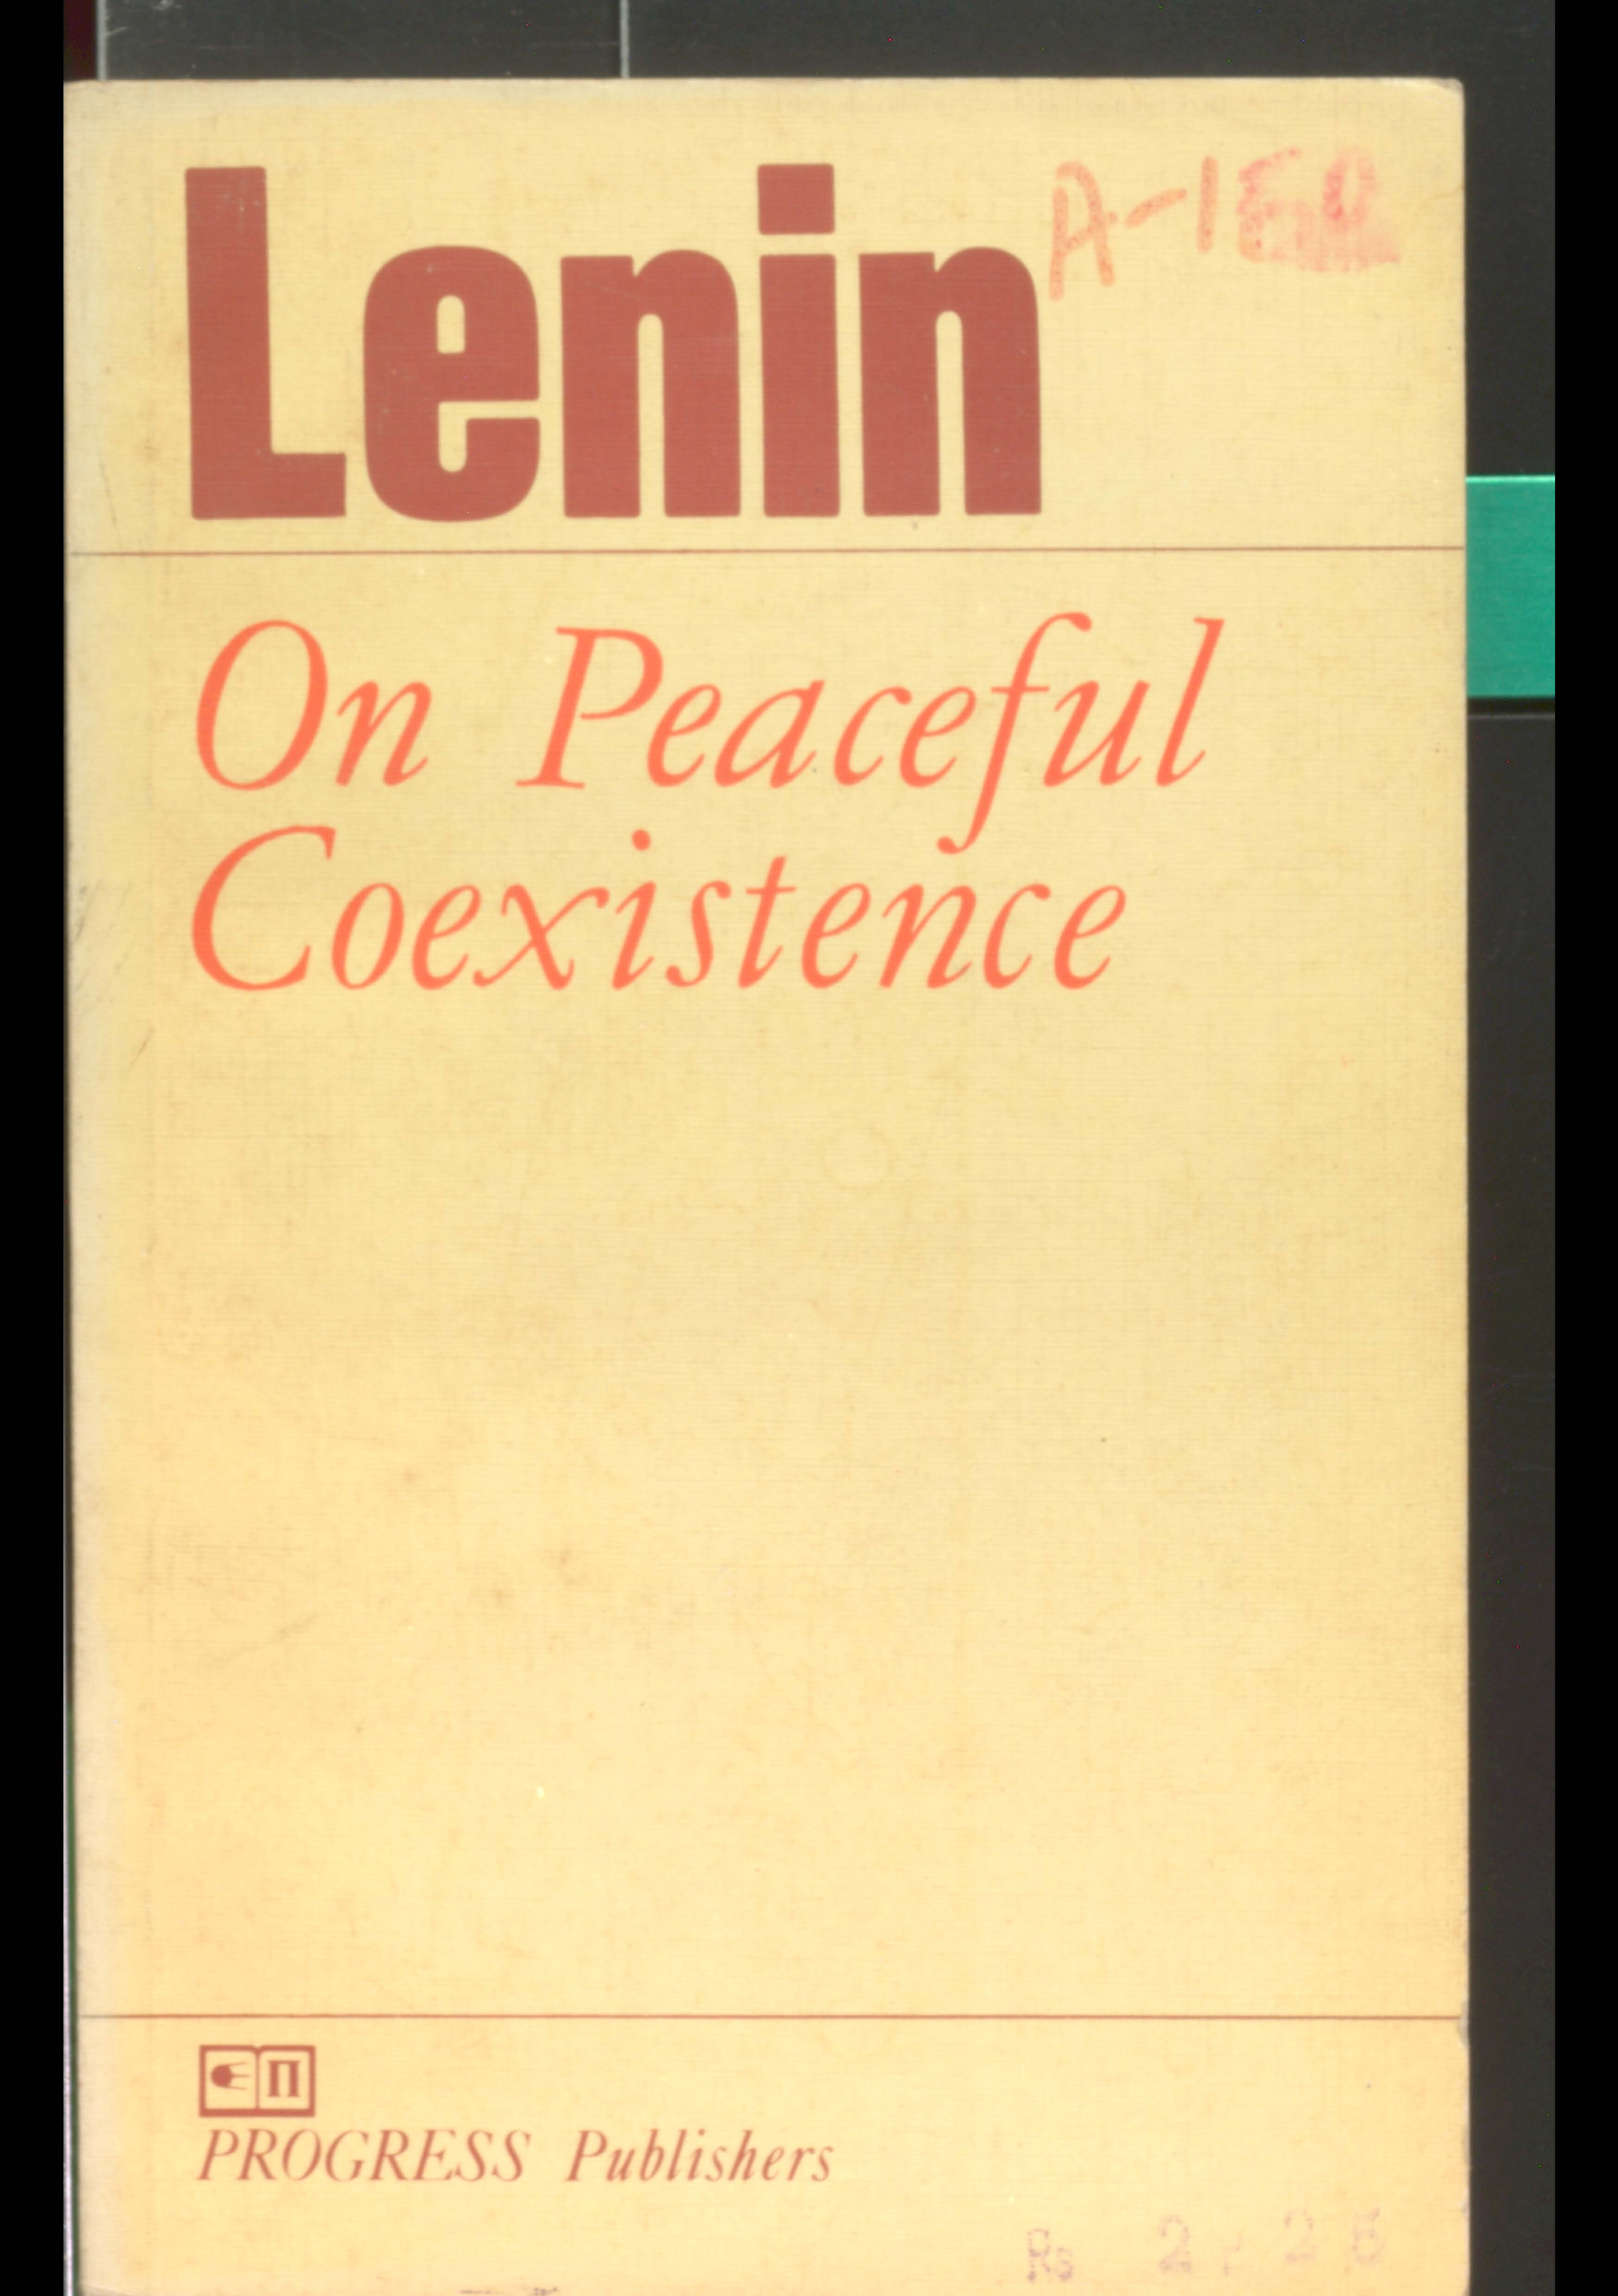 Lenin on Peaceful Coexistence